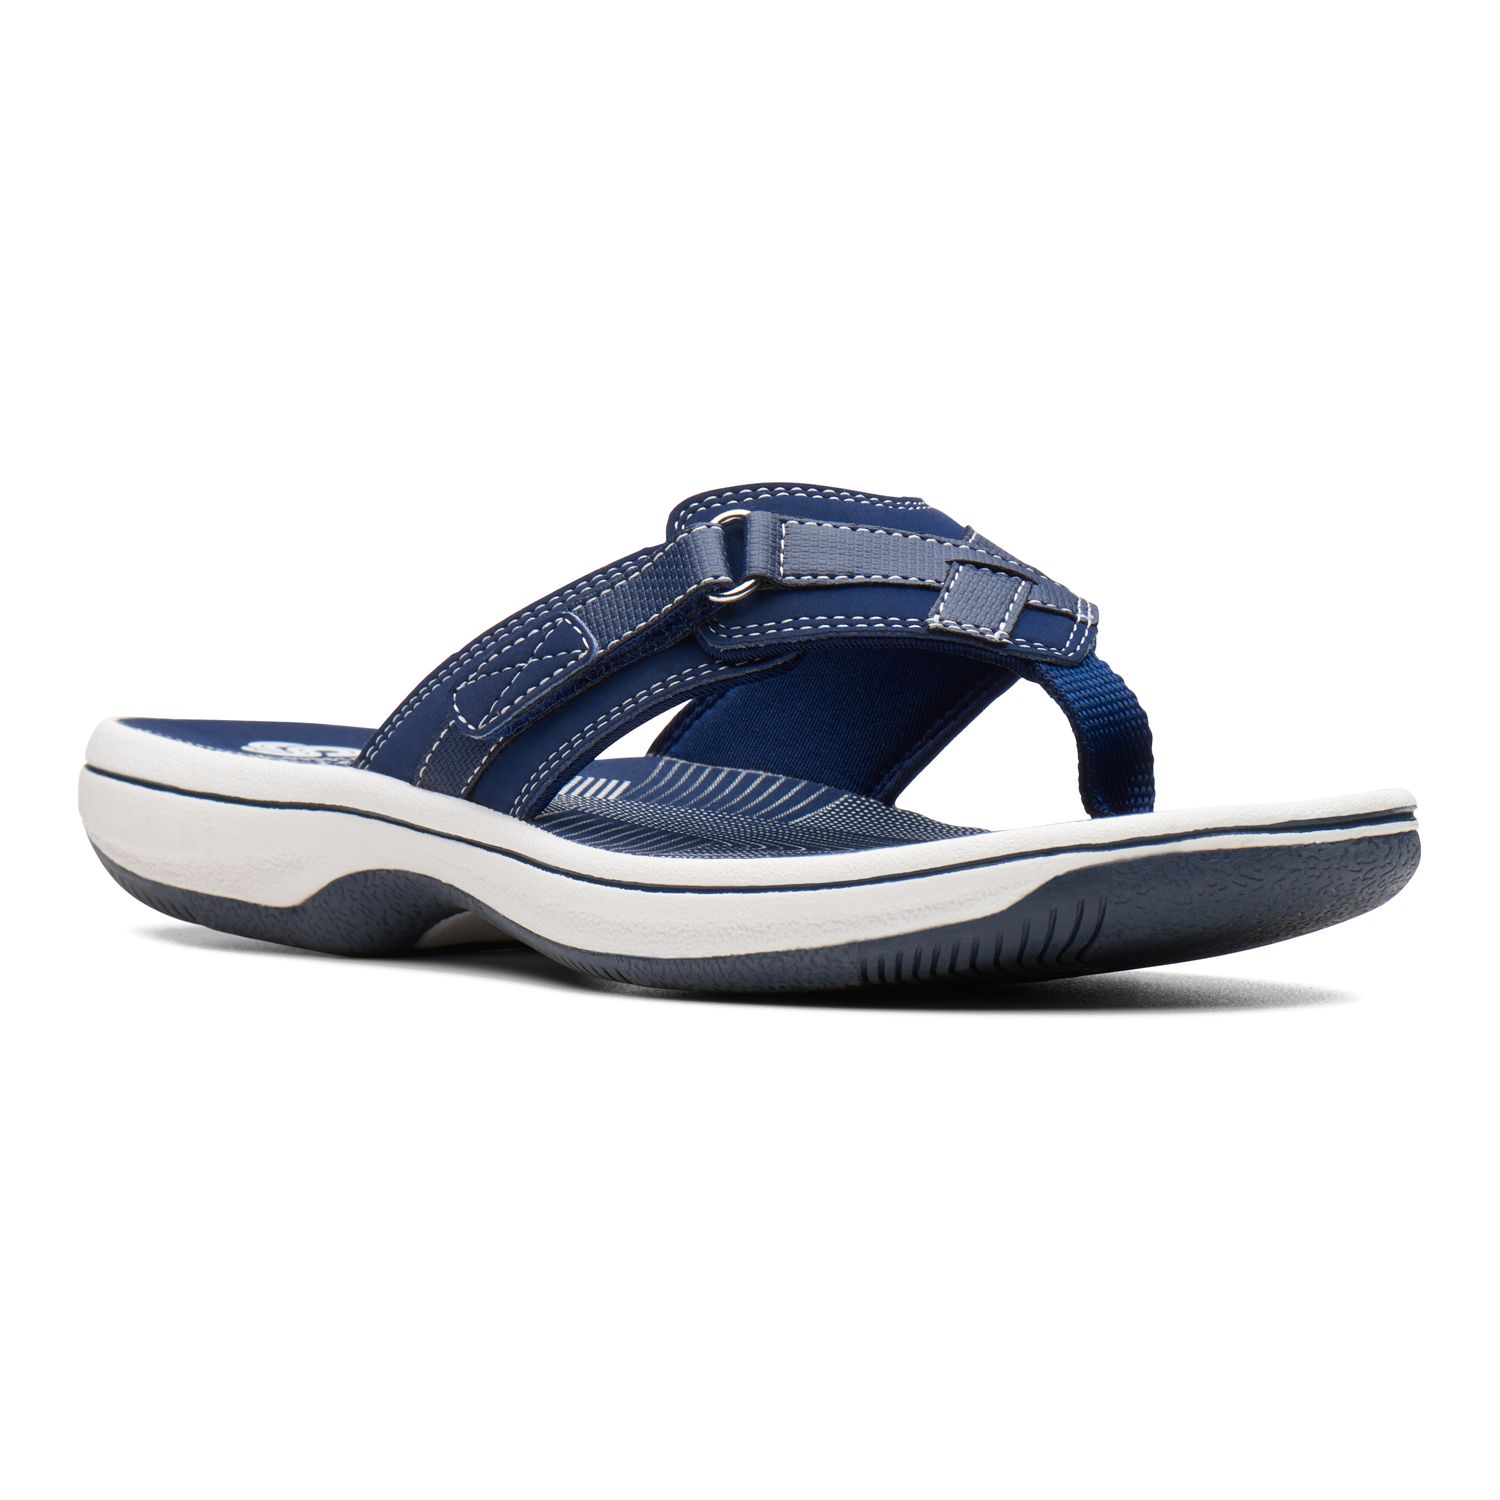 Womens Blue Sandals - Shoes | Kohl's